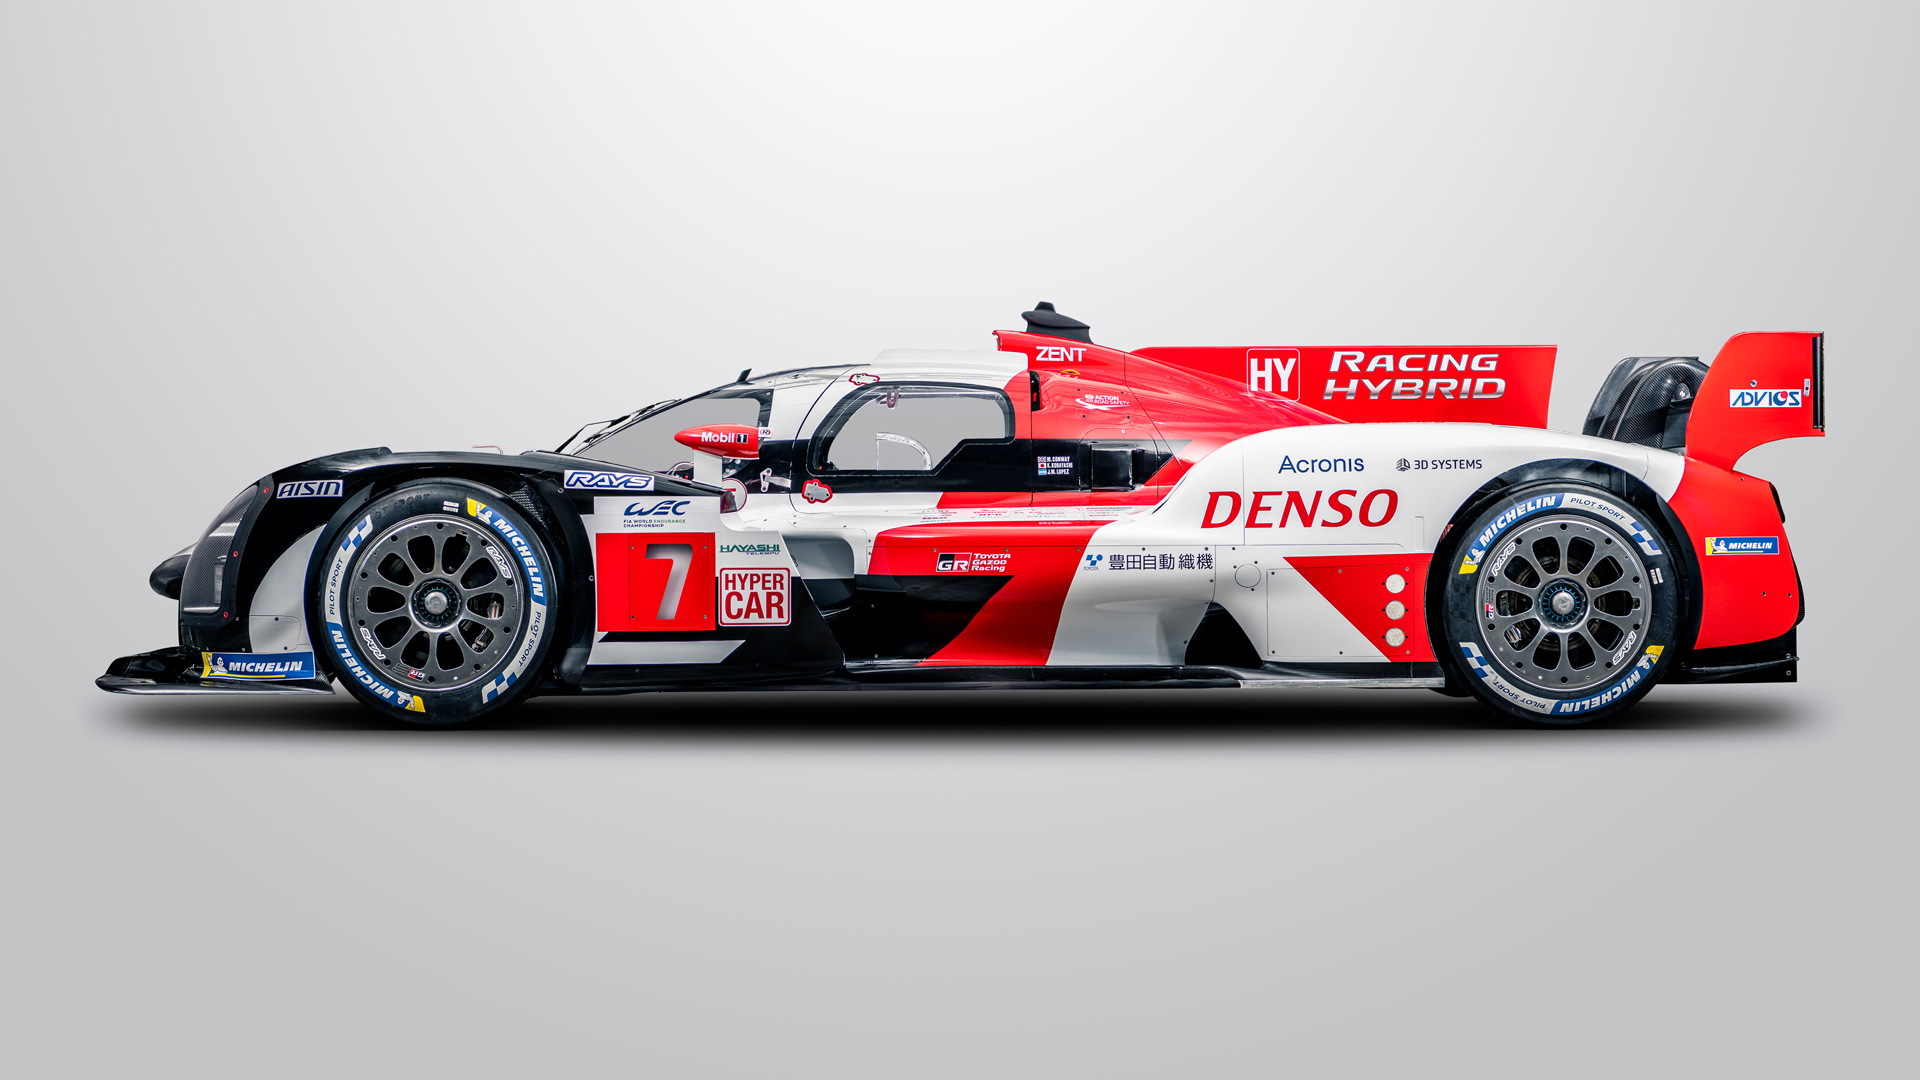 2021 Toyota GR010 Hybrid Le Mans Hypercar race car